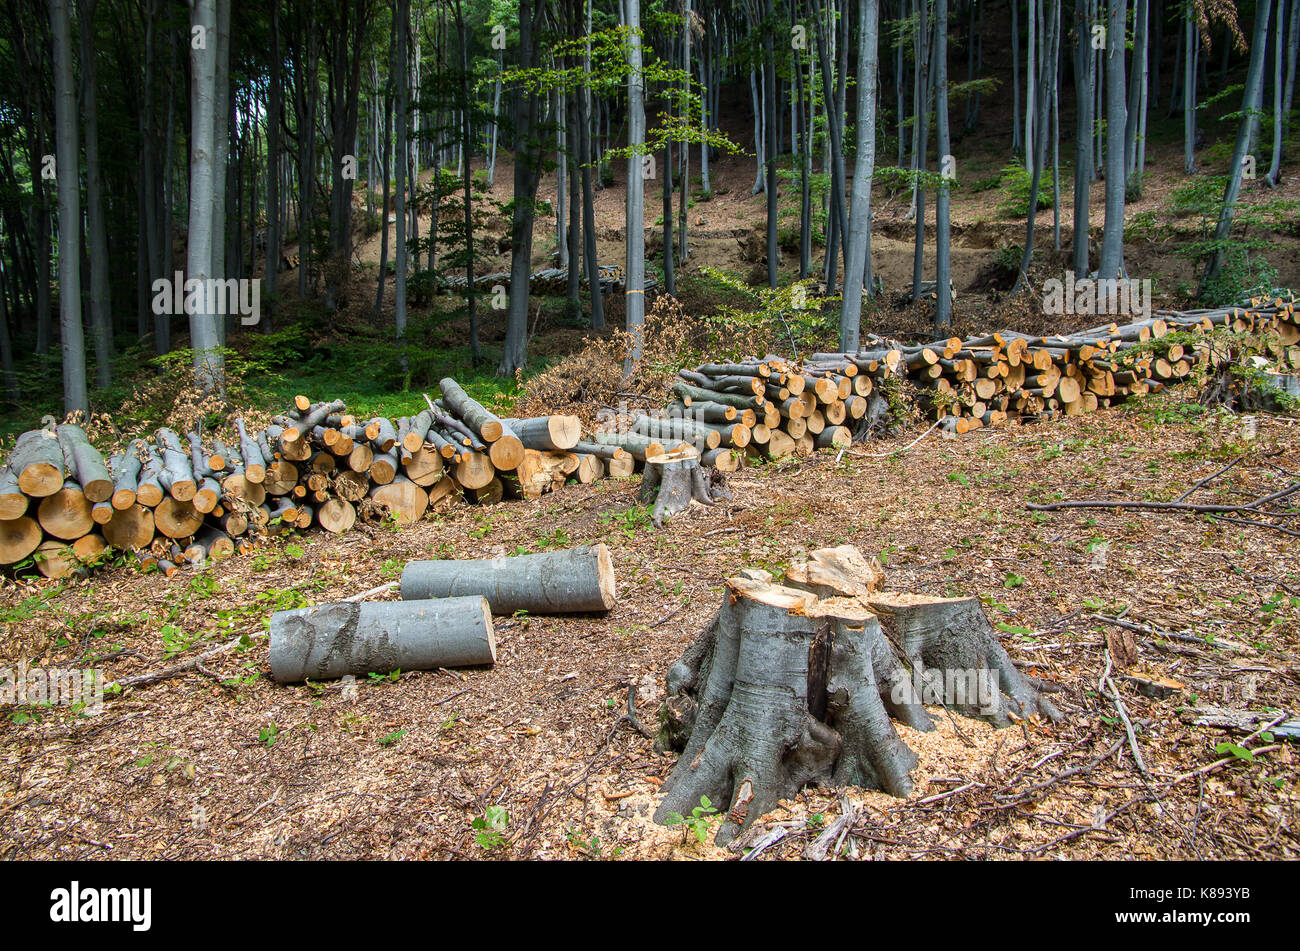 Distruzione delle foreste a fini commerciali. Foto Stock